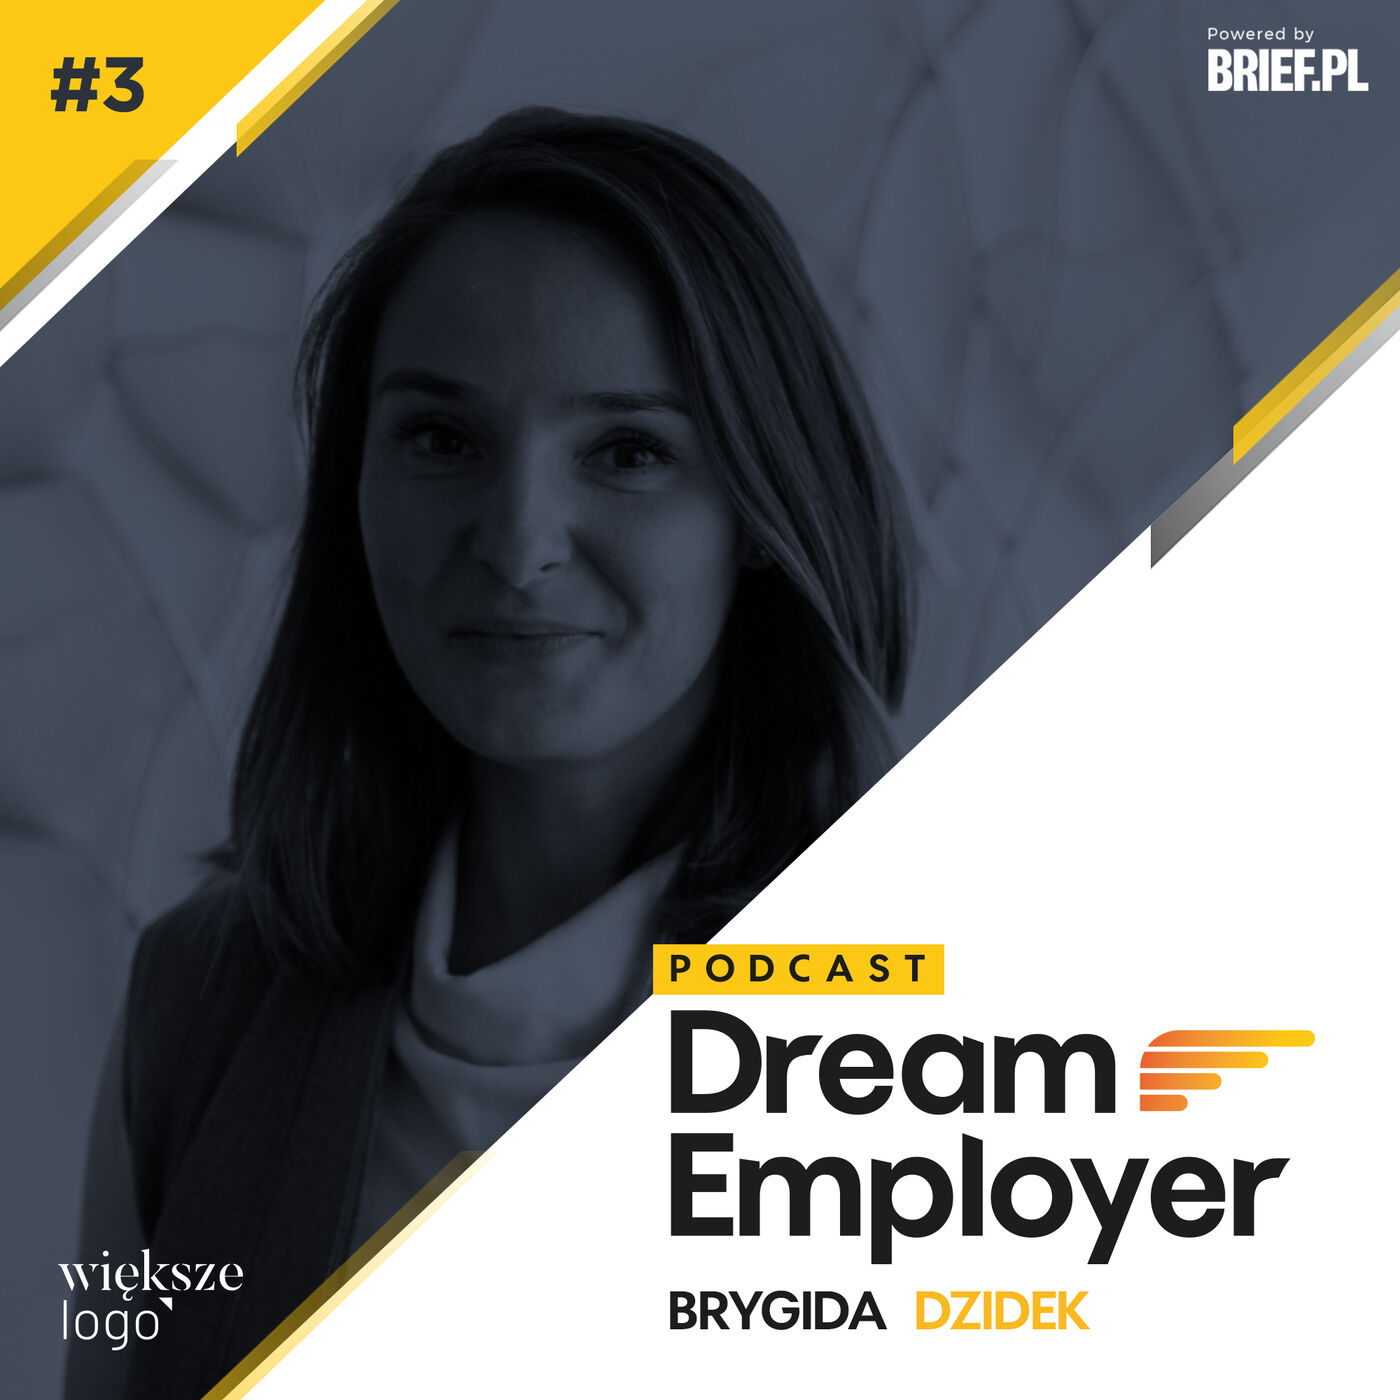 Podcast #DreamEmployer 03 – Brygida Dzidek, Haptology